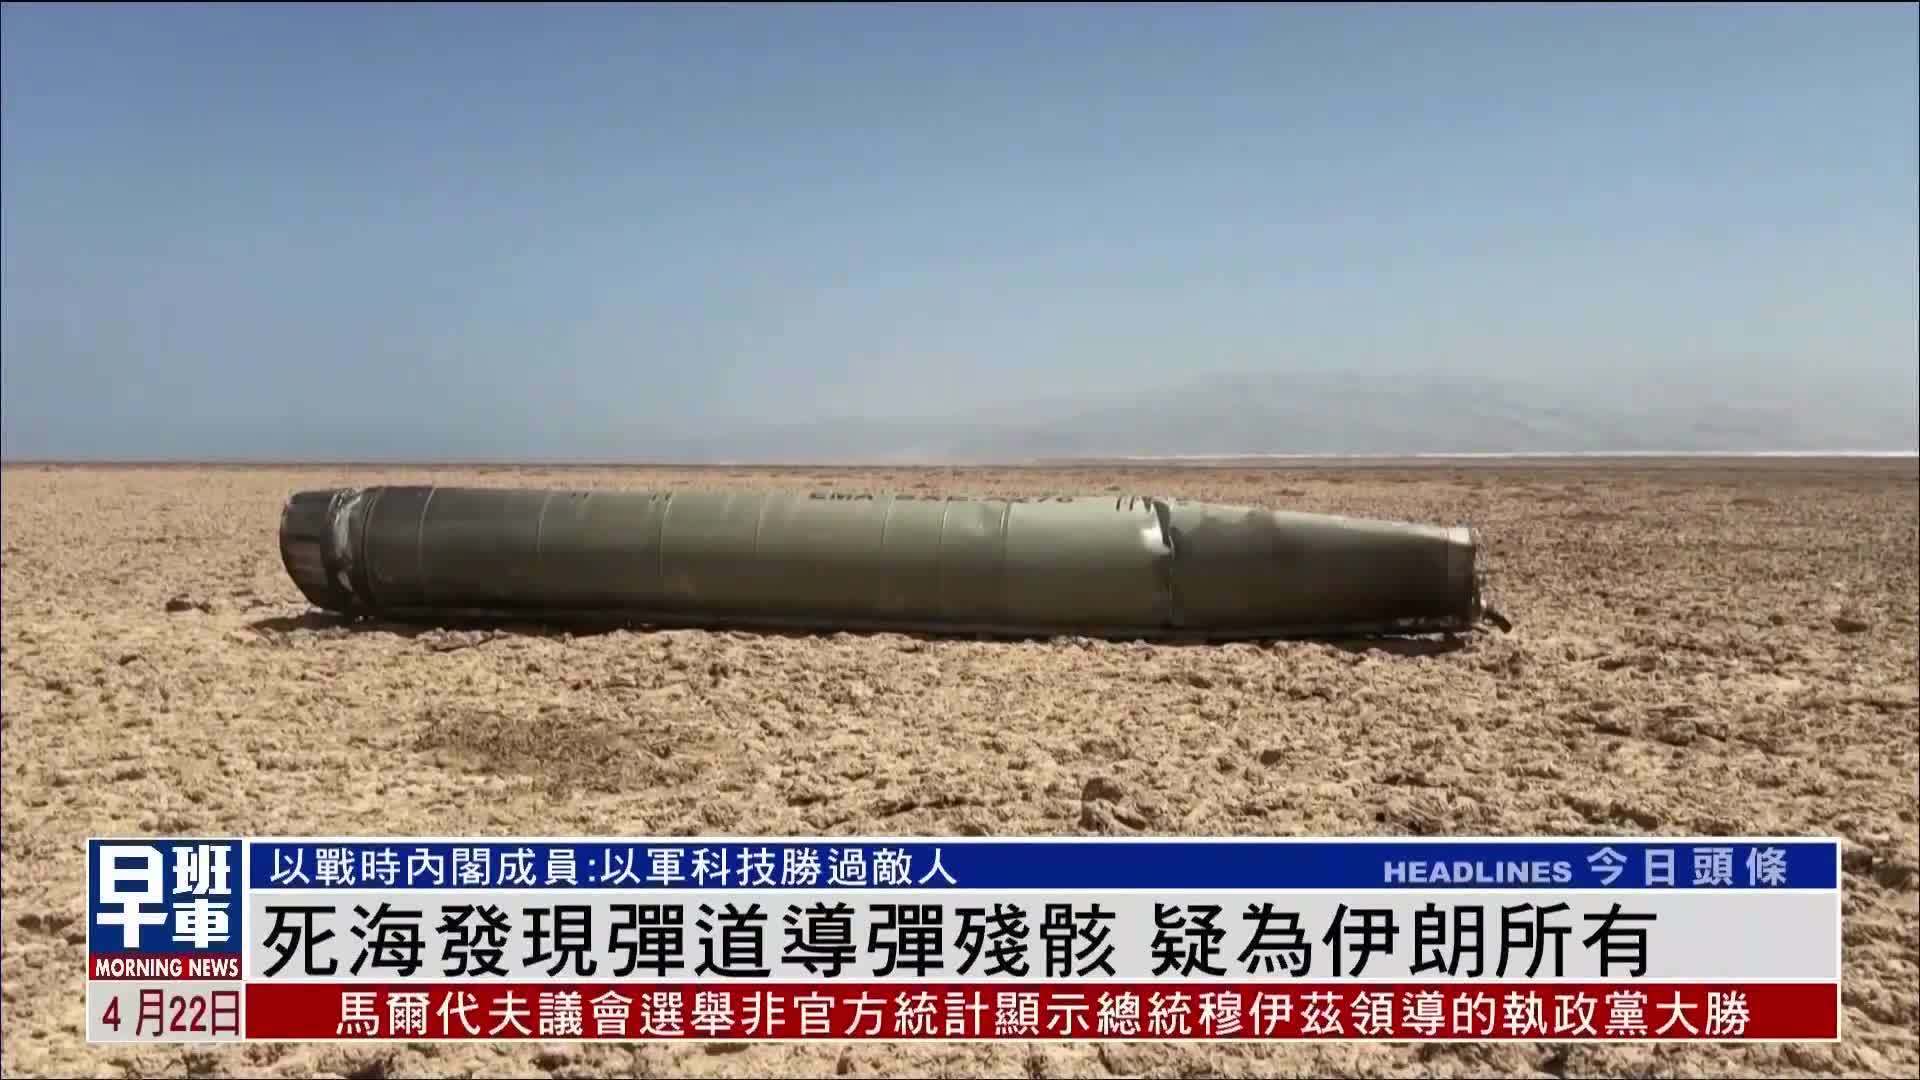 死海发现弹道导弹残骸 疑为伊朗所有